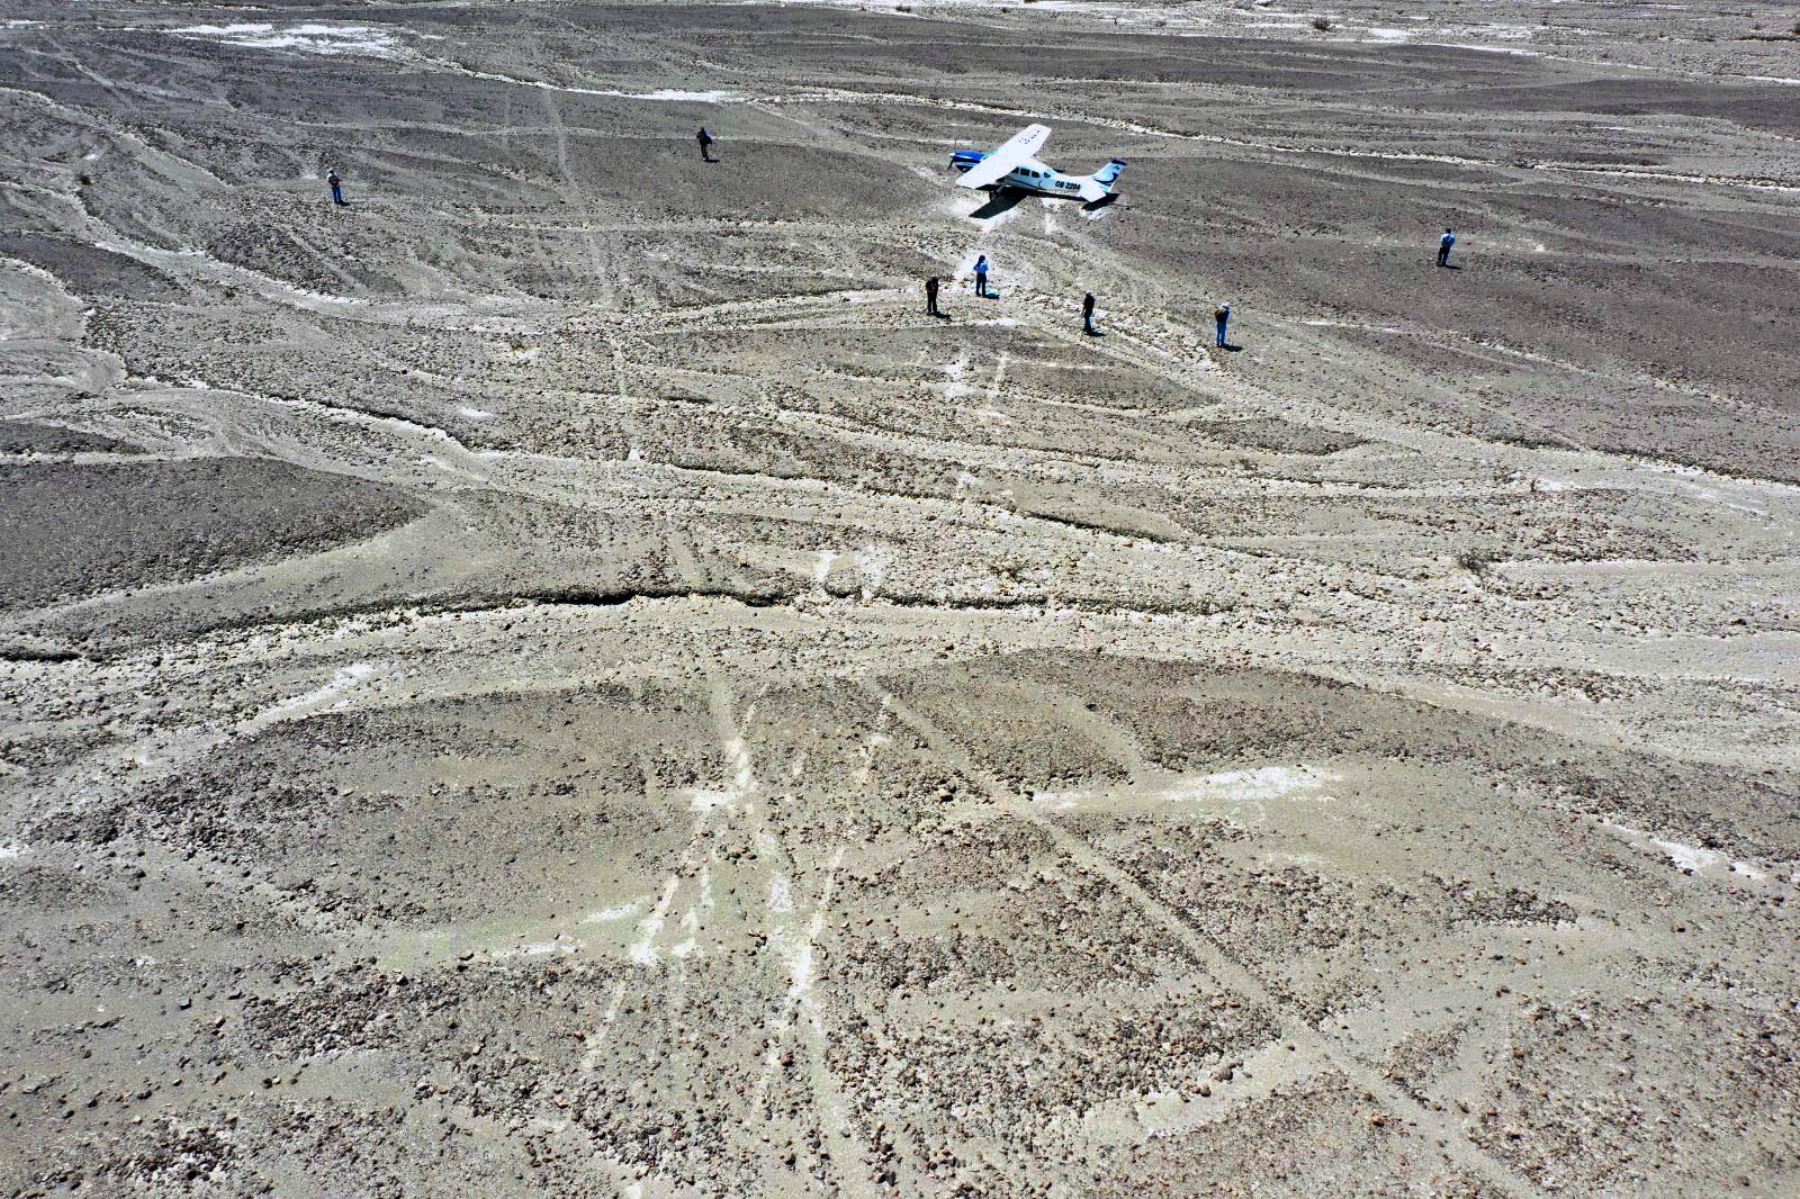 La Dirección de Cultura de Ica confirmó que la avioneta que aterrizó de emergencia en las pampas de Nasca afectó a tres líneas y alteró el paisaje cultural del Patrimonio de la Humanidad reconocido por la Unesco. Foto: Genry Bautista